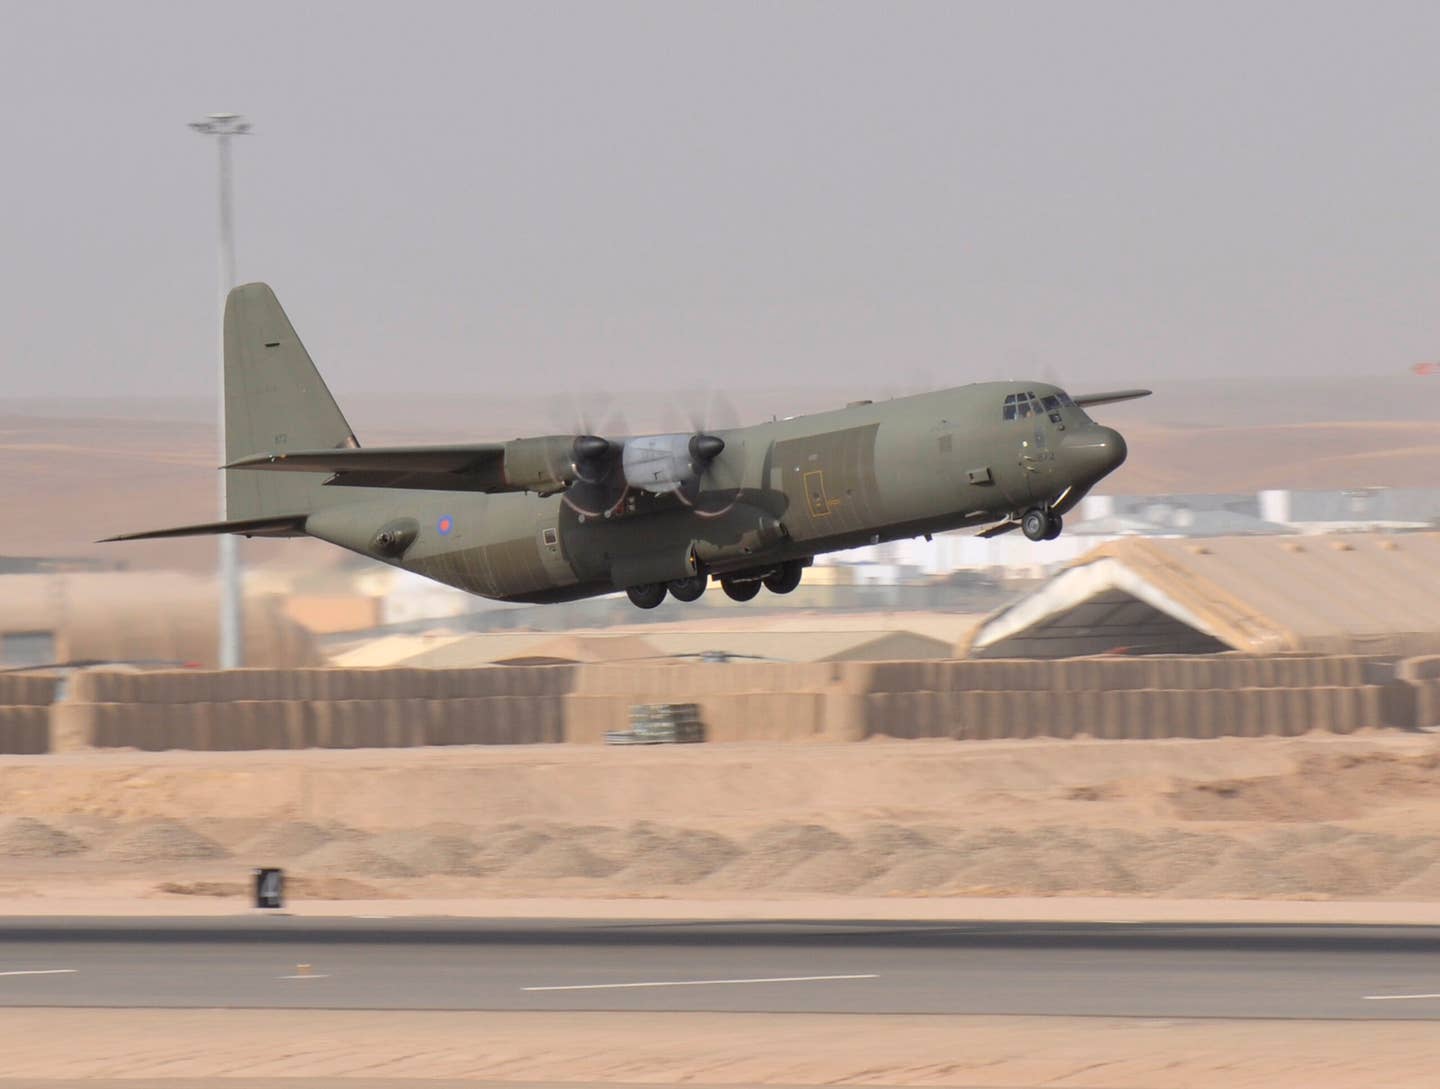 c-130 hercules in afghanistan